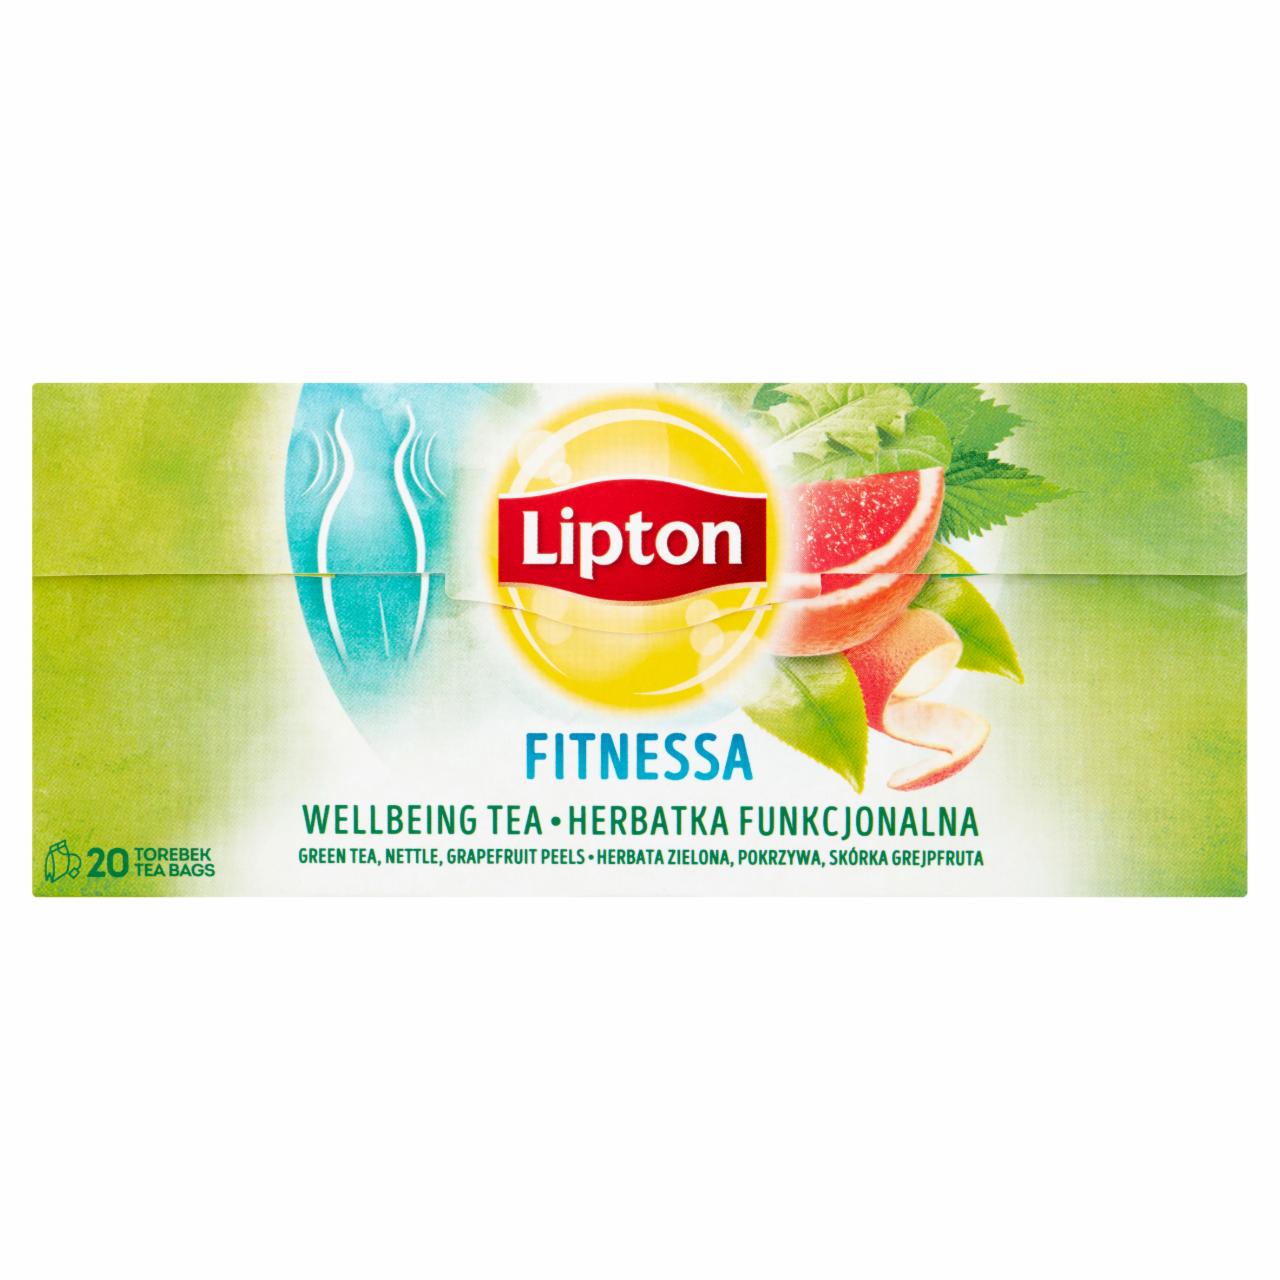 Képek - Lipton Fitnessa ízesített zöld tea és herbatea 20 filter